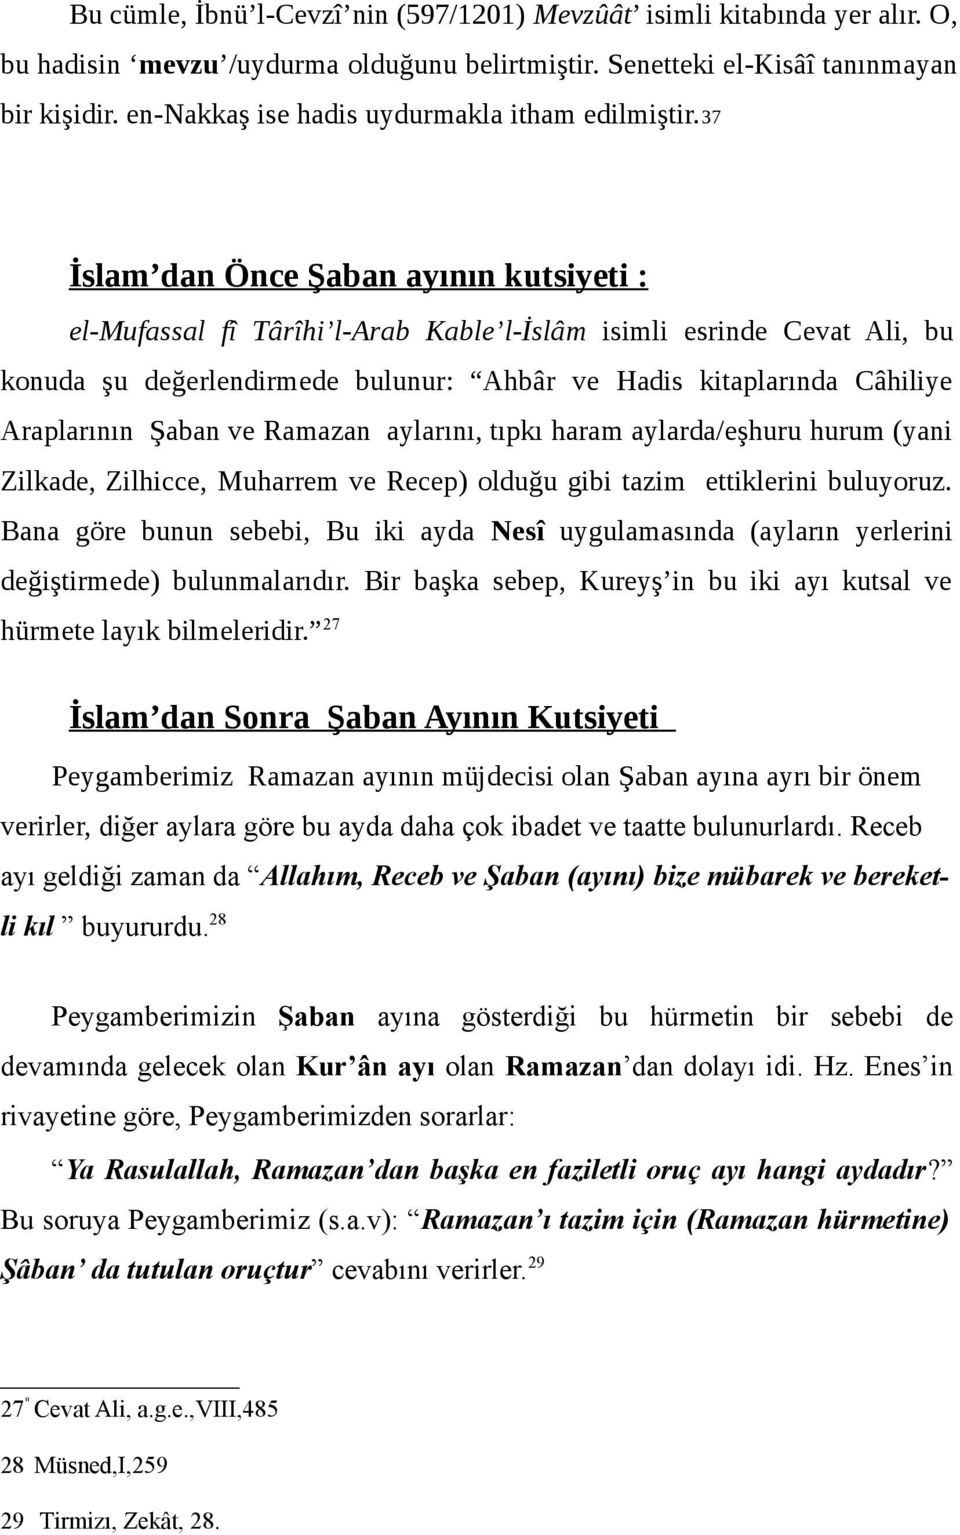 37 İslam dan Önce Şaban ayının kutsiyeti : el-mufassal fî Târîhi l-arab Kable l-islâm isimli esrinde Cevat Ali, bu konuda şu değerlendirmede bulunur: Ahbâr ve Hadis kitaplarında Câhiliye Araplarının